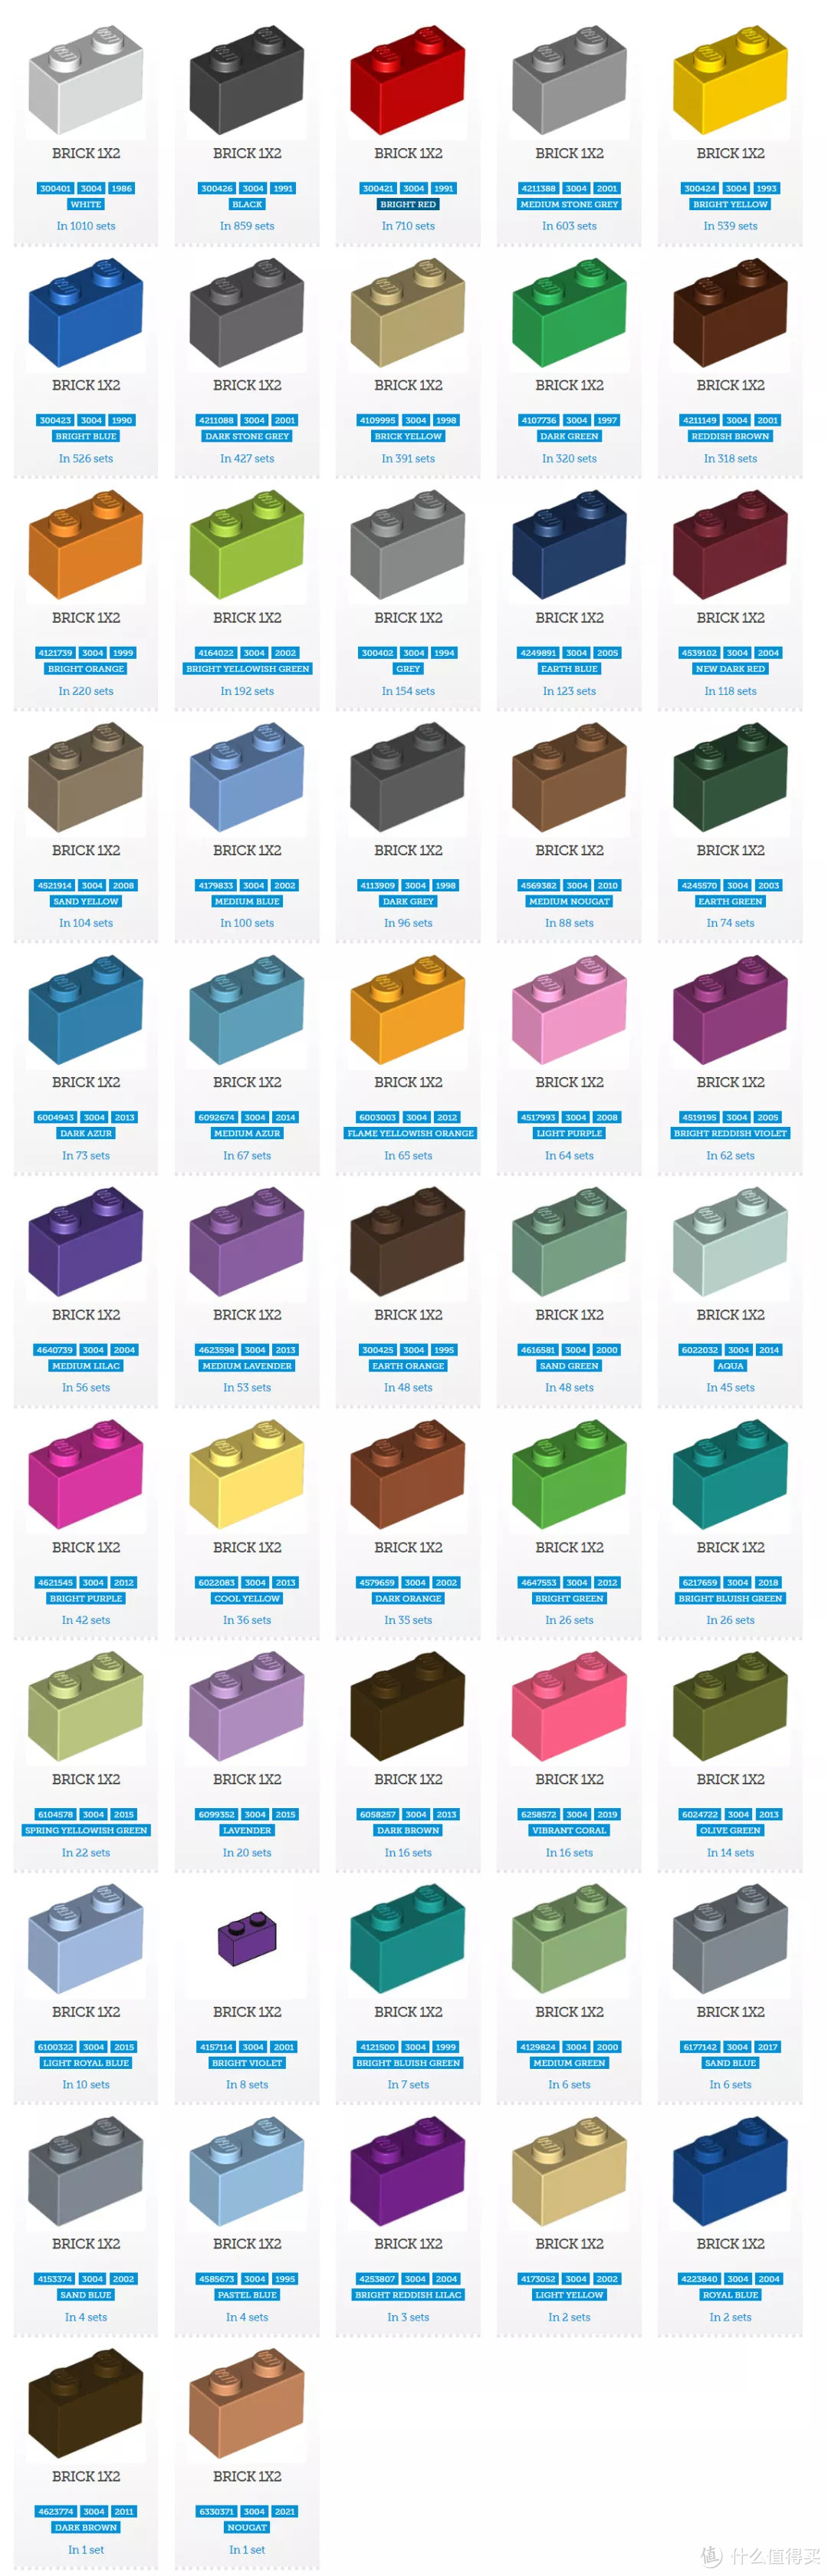 哪个乐高元素的颜色最多？